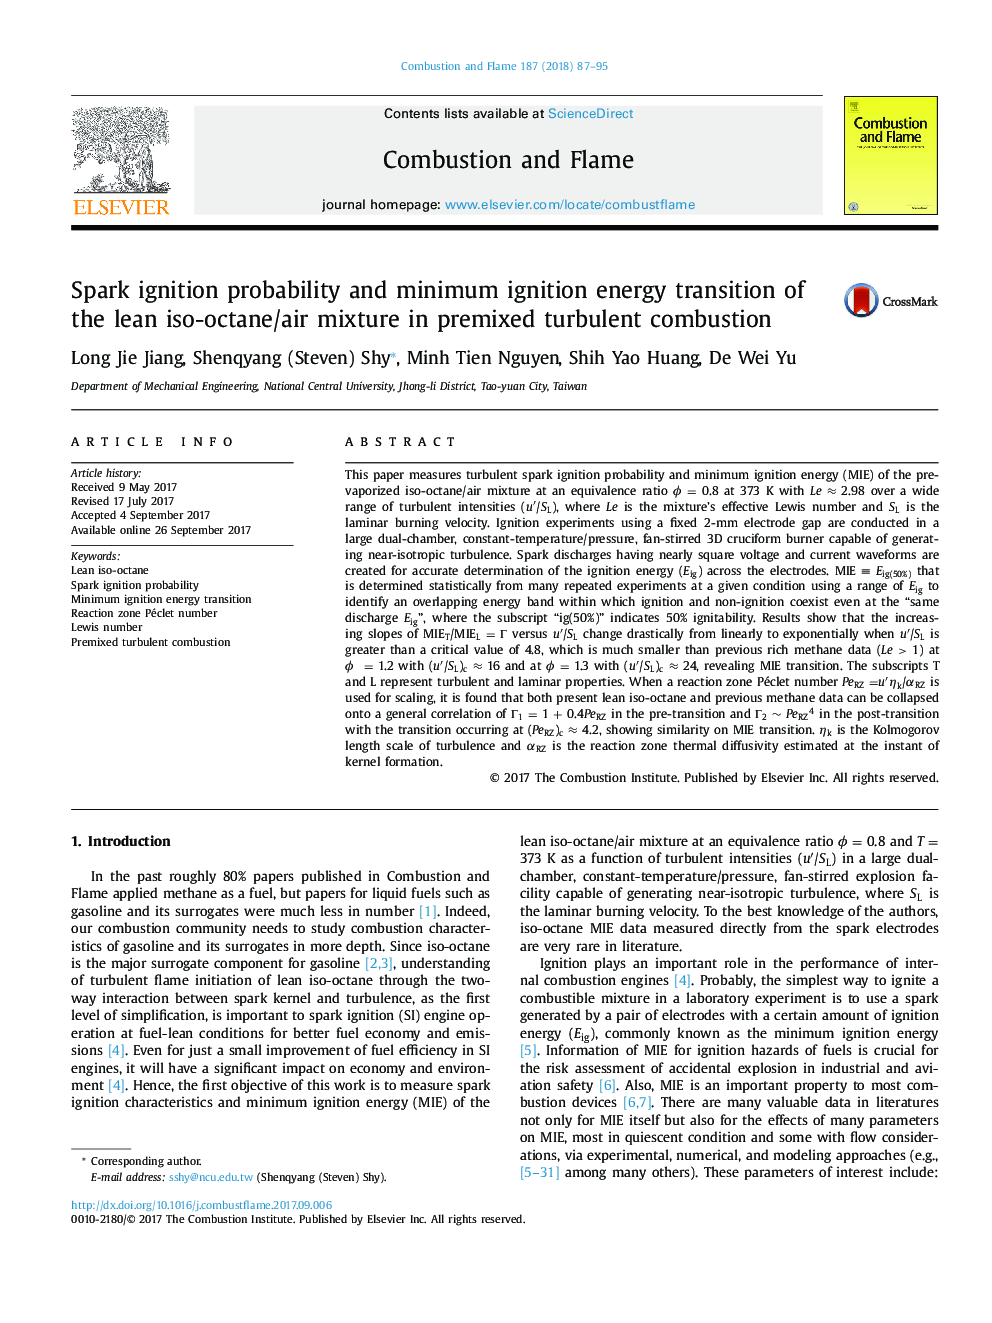 احتمال احتراق جرقه و انتقال انرژی احتراق حداقلی از مخلوط ایزواکتان/هوا ناب در احتراق متلاطم پیش اختلاط